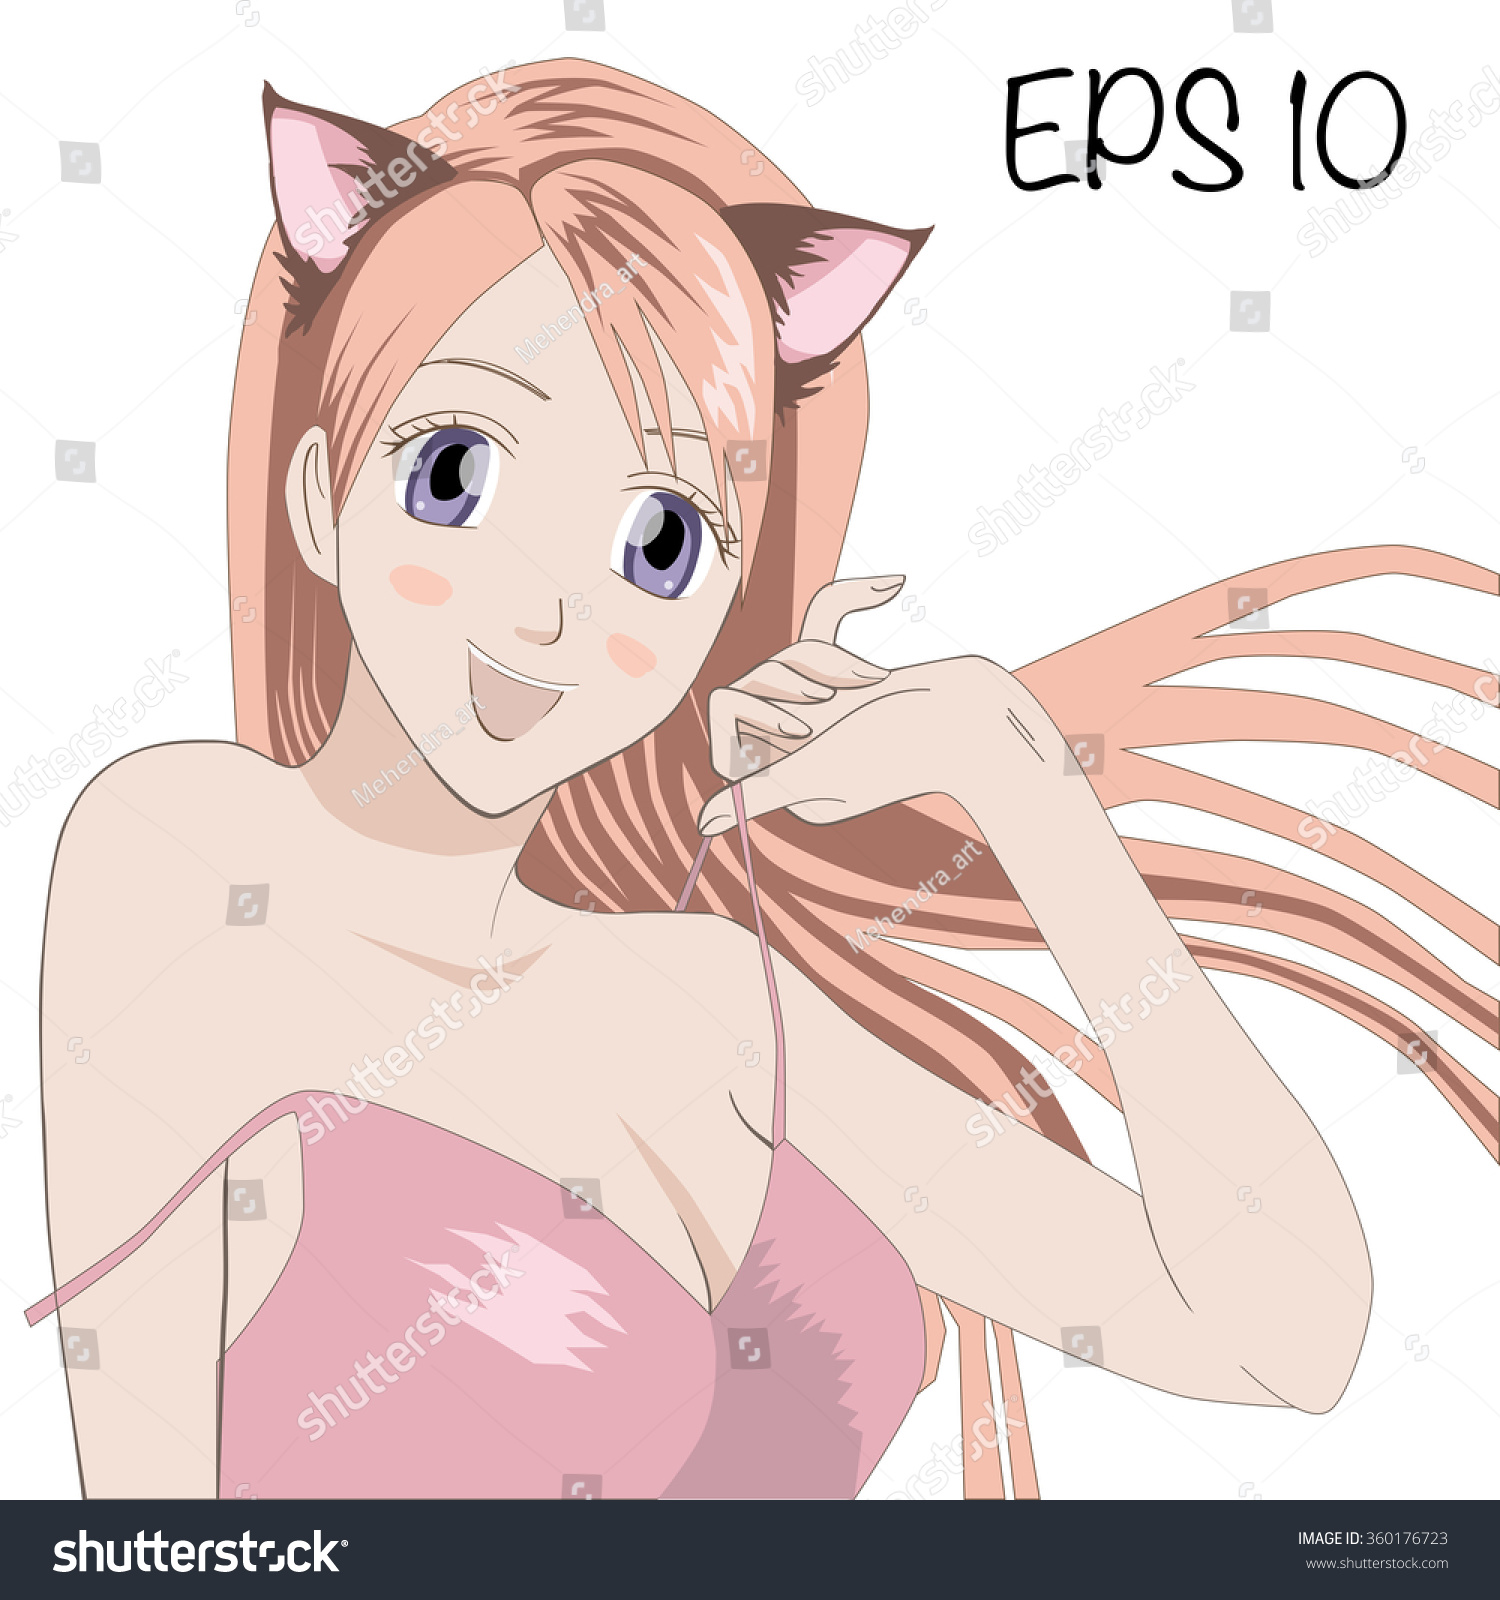 Sexy girl anime